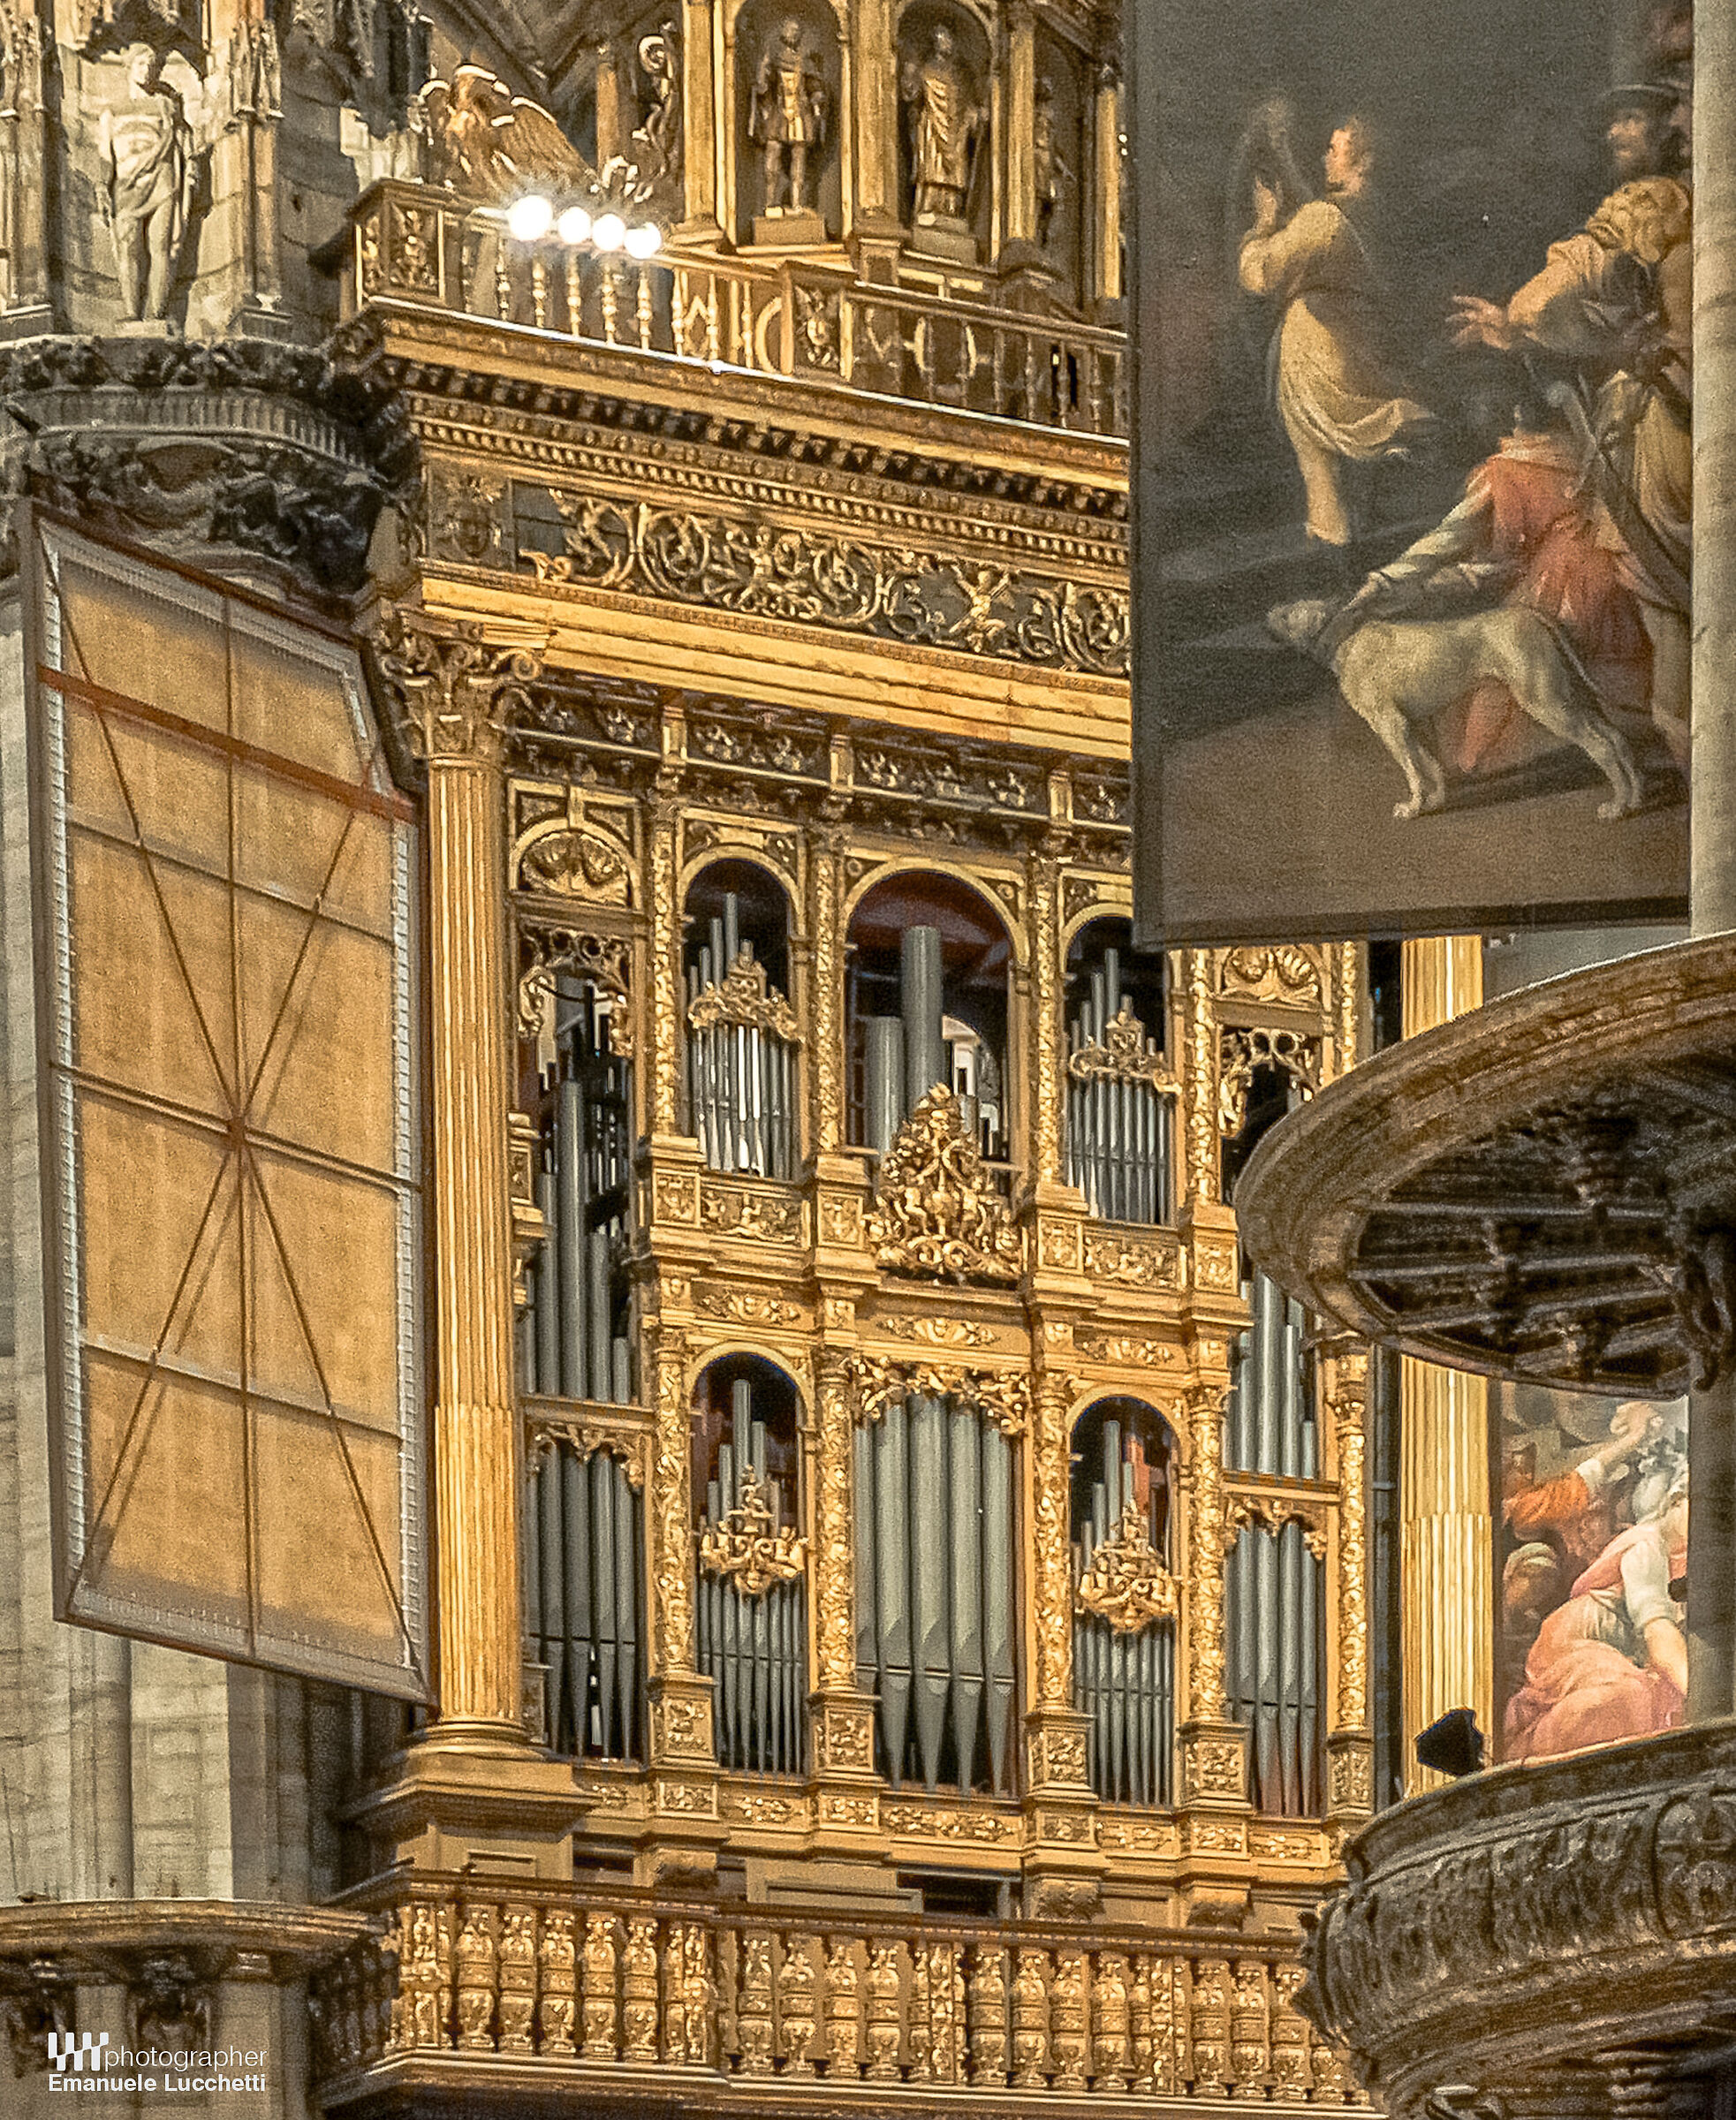 Organo a Canne del Duomo di Milano...